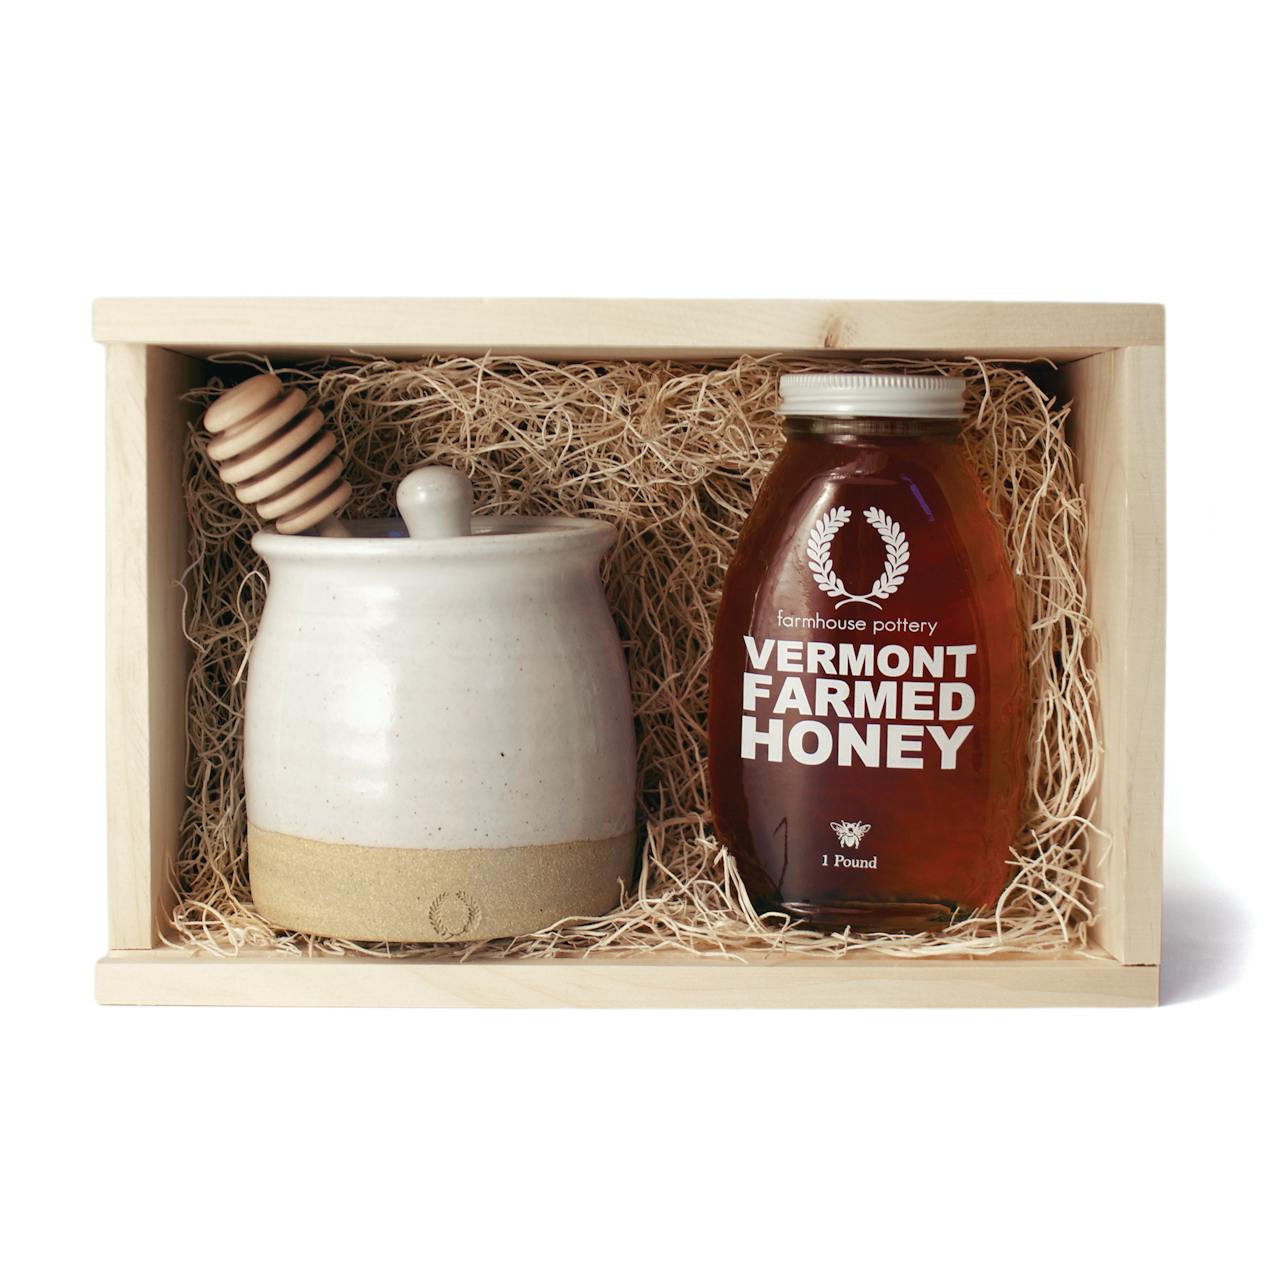 Farmhouse Pottery Honey & Beehive Honey Pot